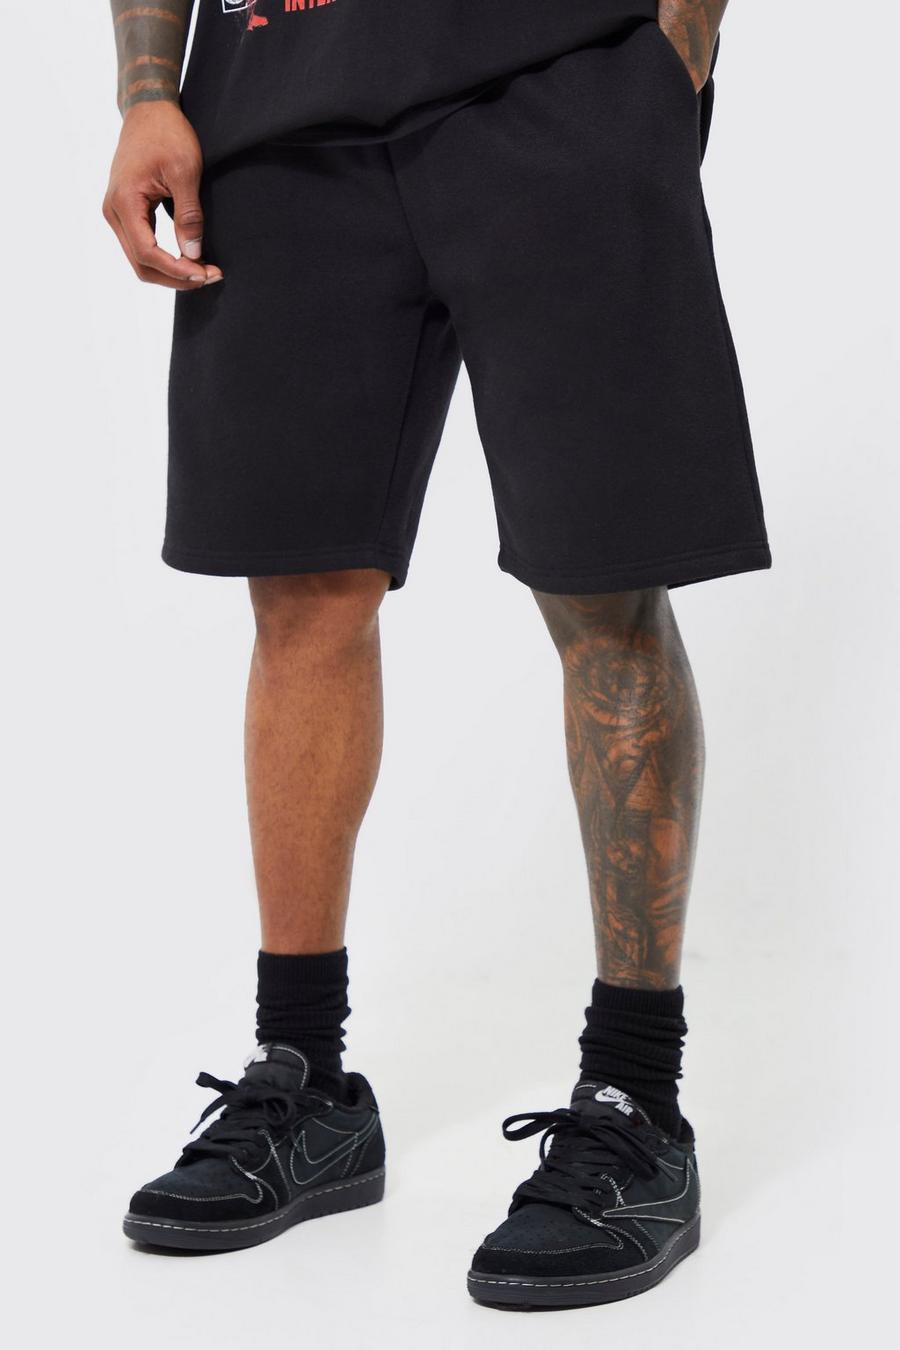 Black Basic Loose fit mellanlånga shorts